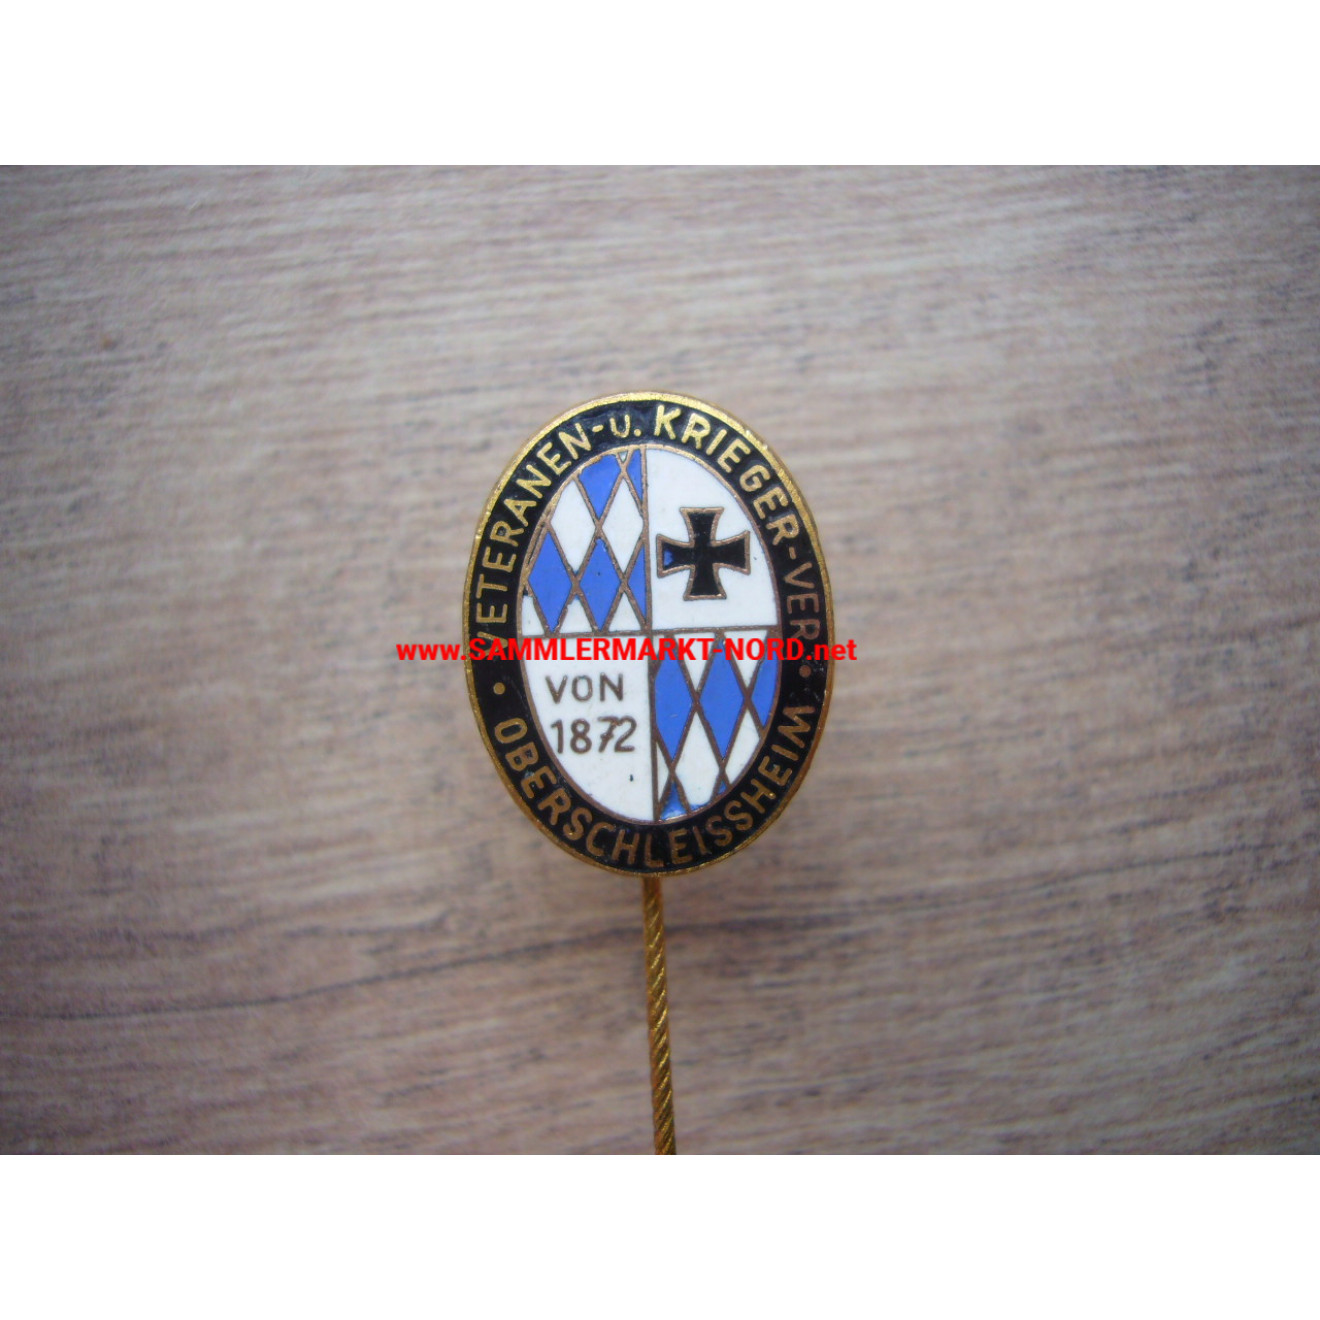 Veterans and warriors association Oberschleissheim - membership pin